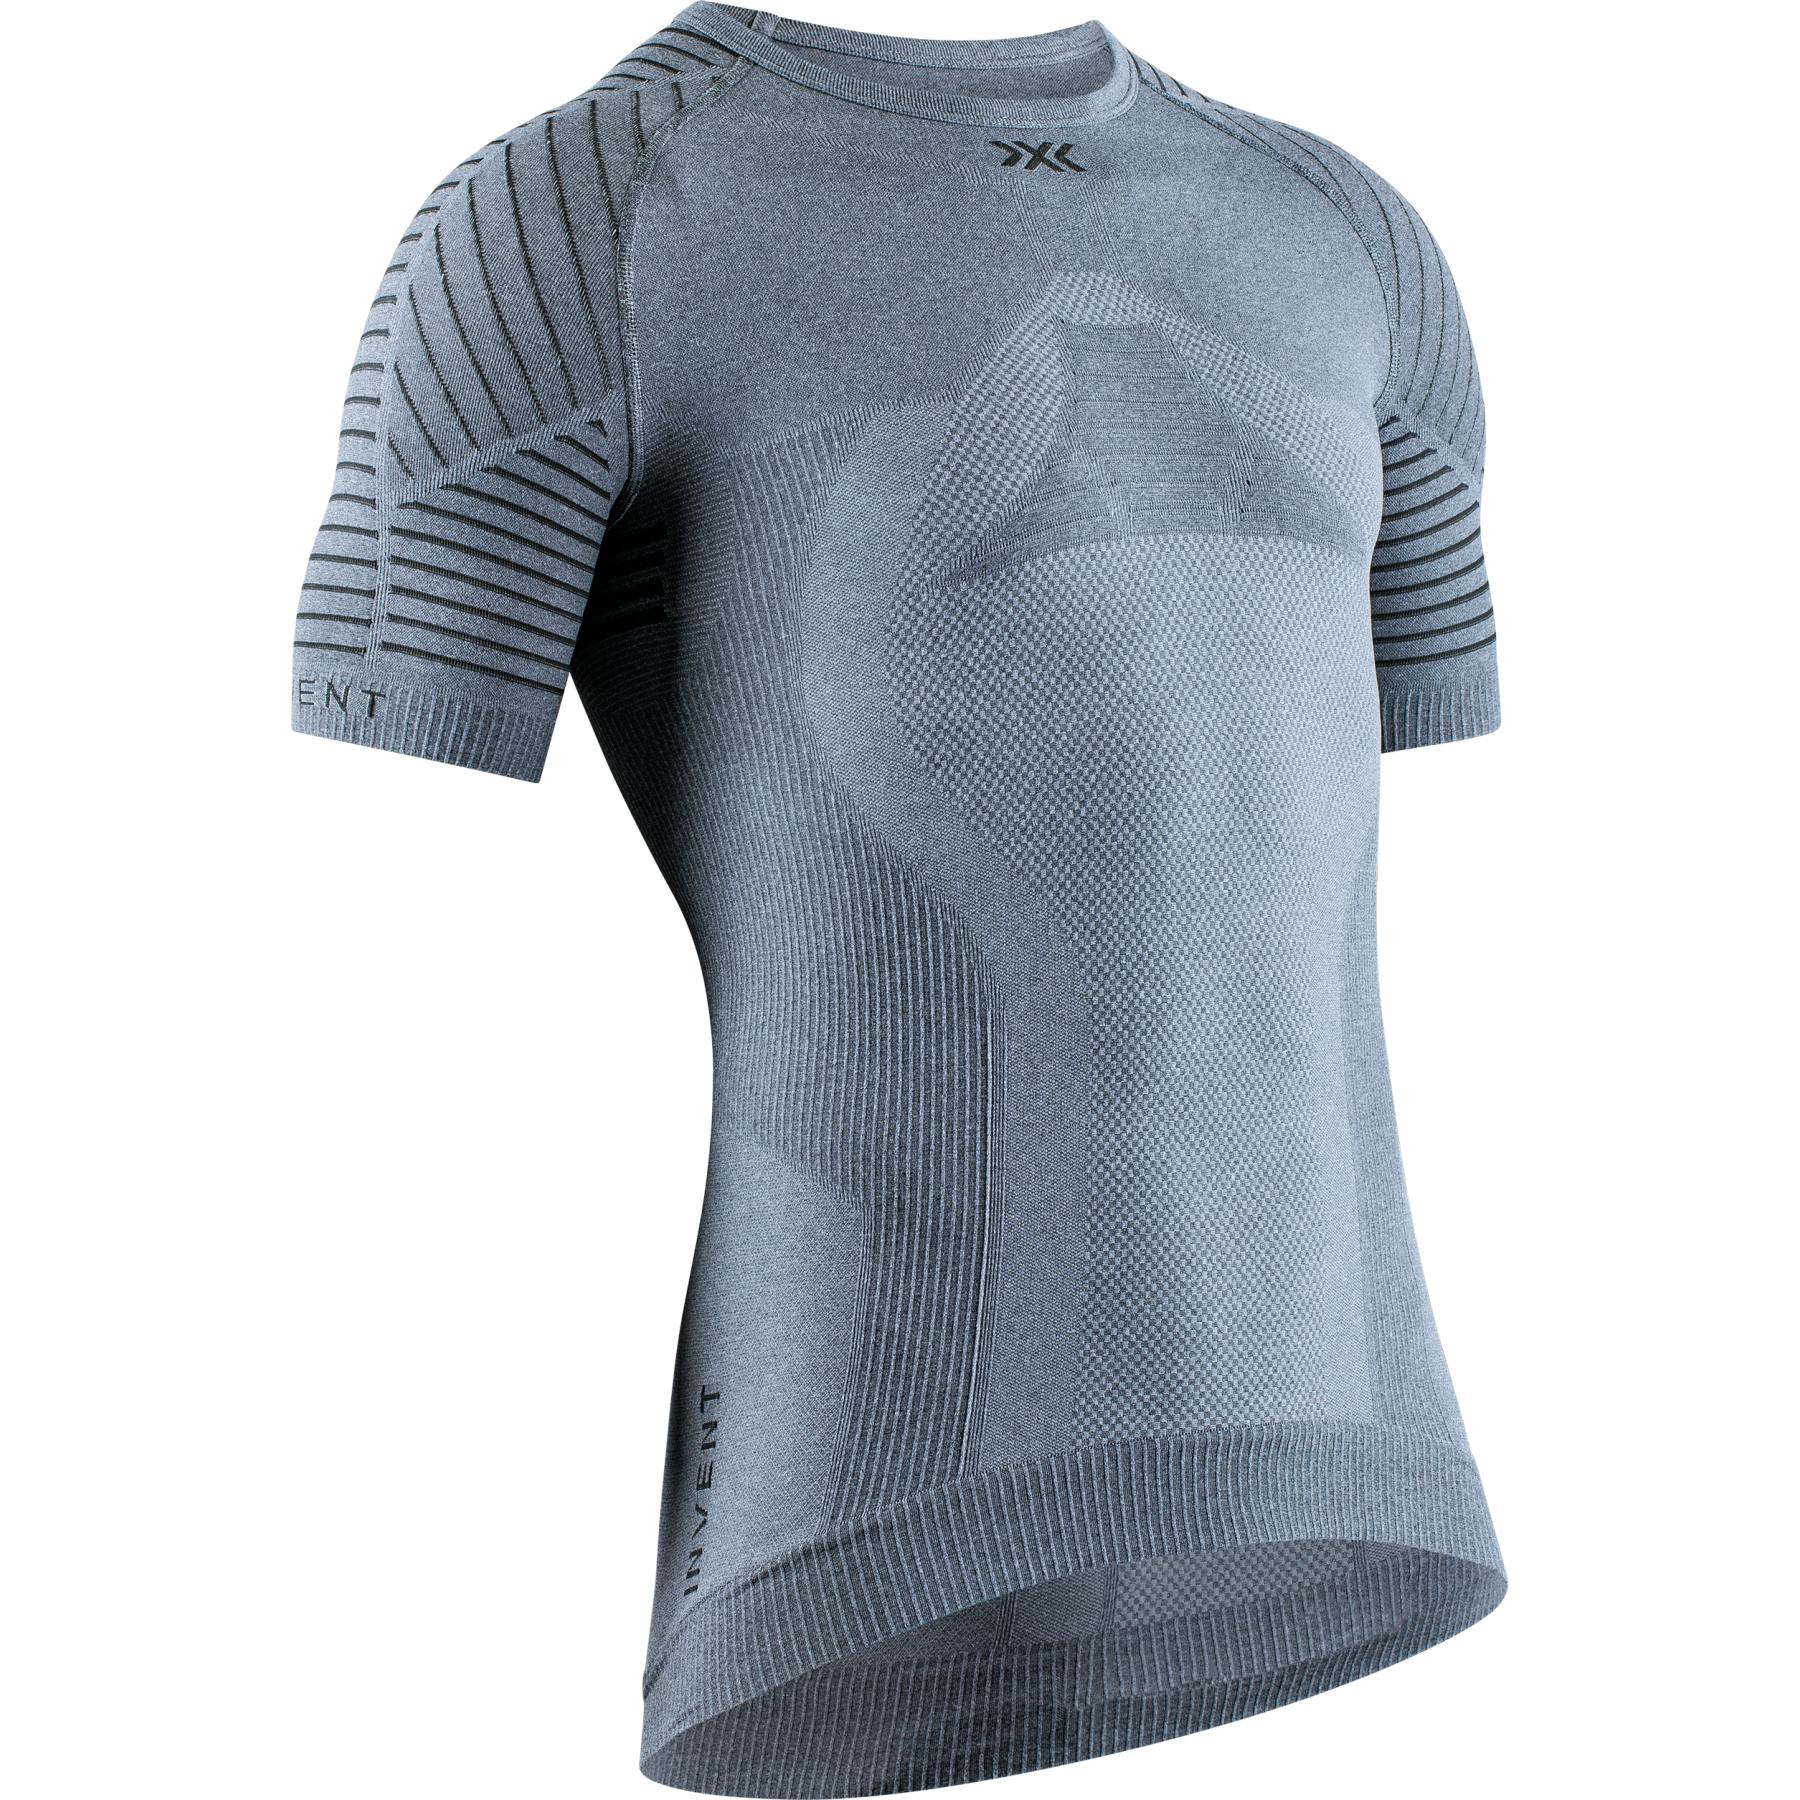 Produktbild von X-Bionic Invent 4.0 LT Round Neck Kurzarm-Unterhemd für Herren - grey melange/anthracite